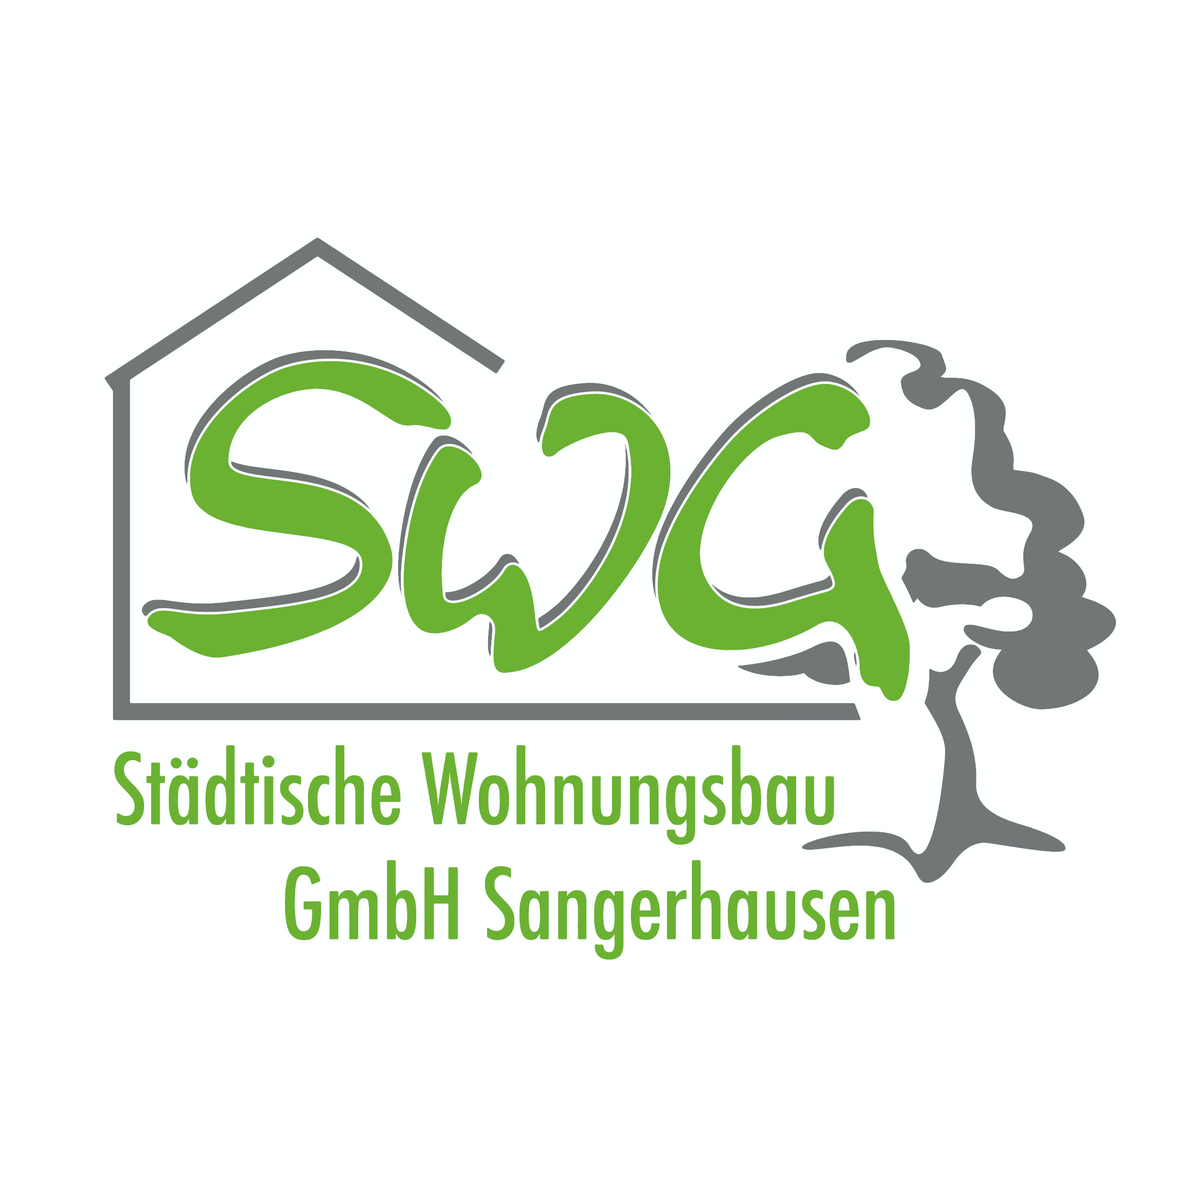 Bild 1 SWG Städtische Wohnungsbau GmbH Sangerhausen in Sangerhausen